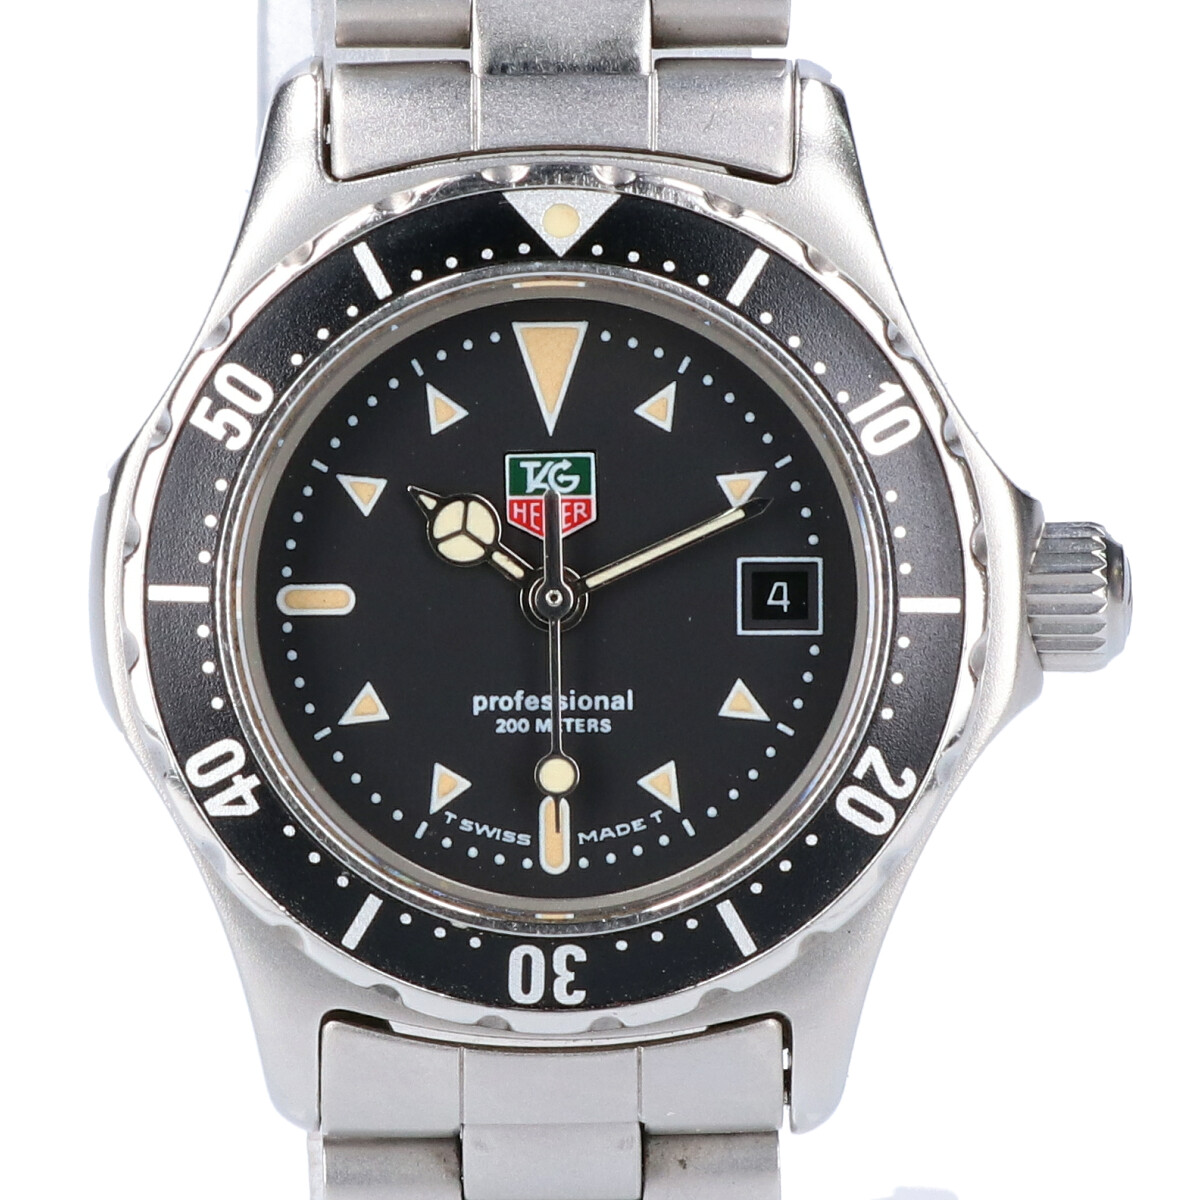 タグ・ホイヤーの973.008R-2 プロフェッショナル 200M クオーツ時計の買取実績です。